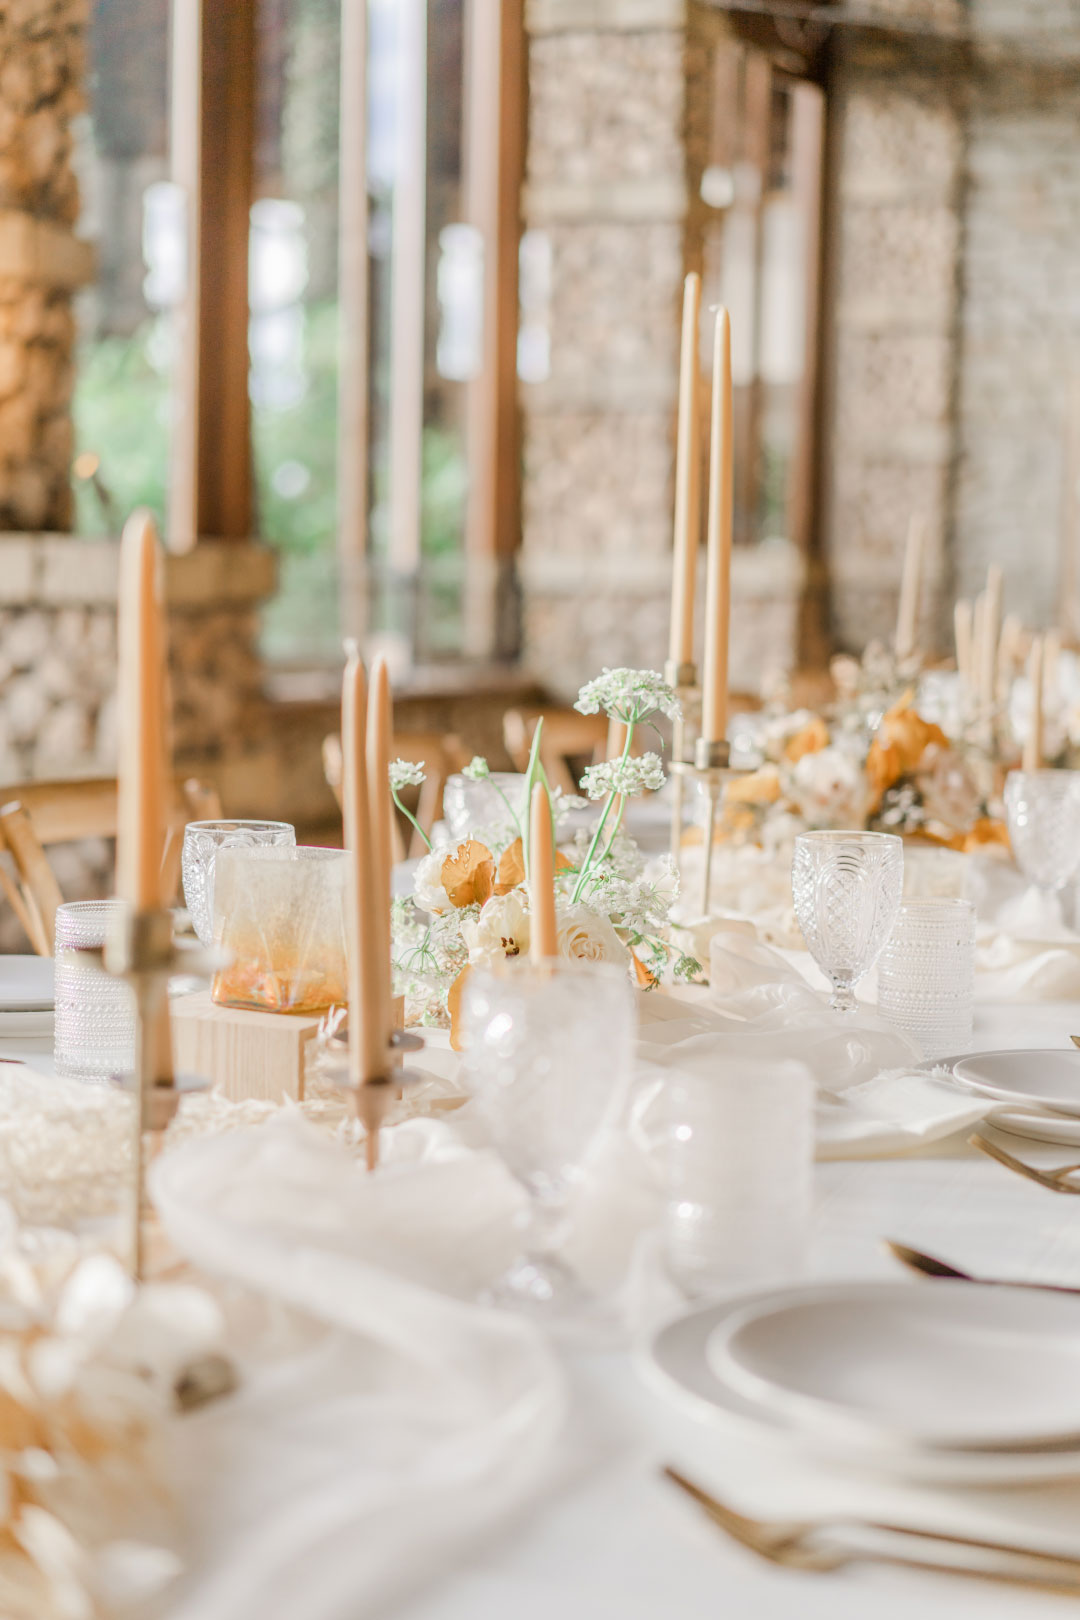 Wedding Tabletop dinner display